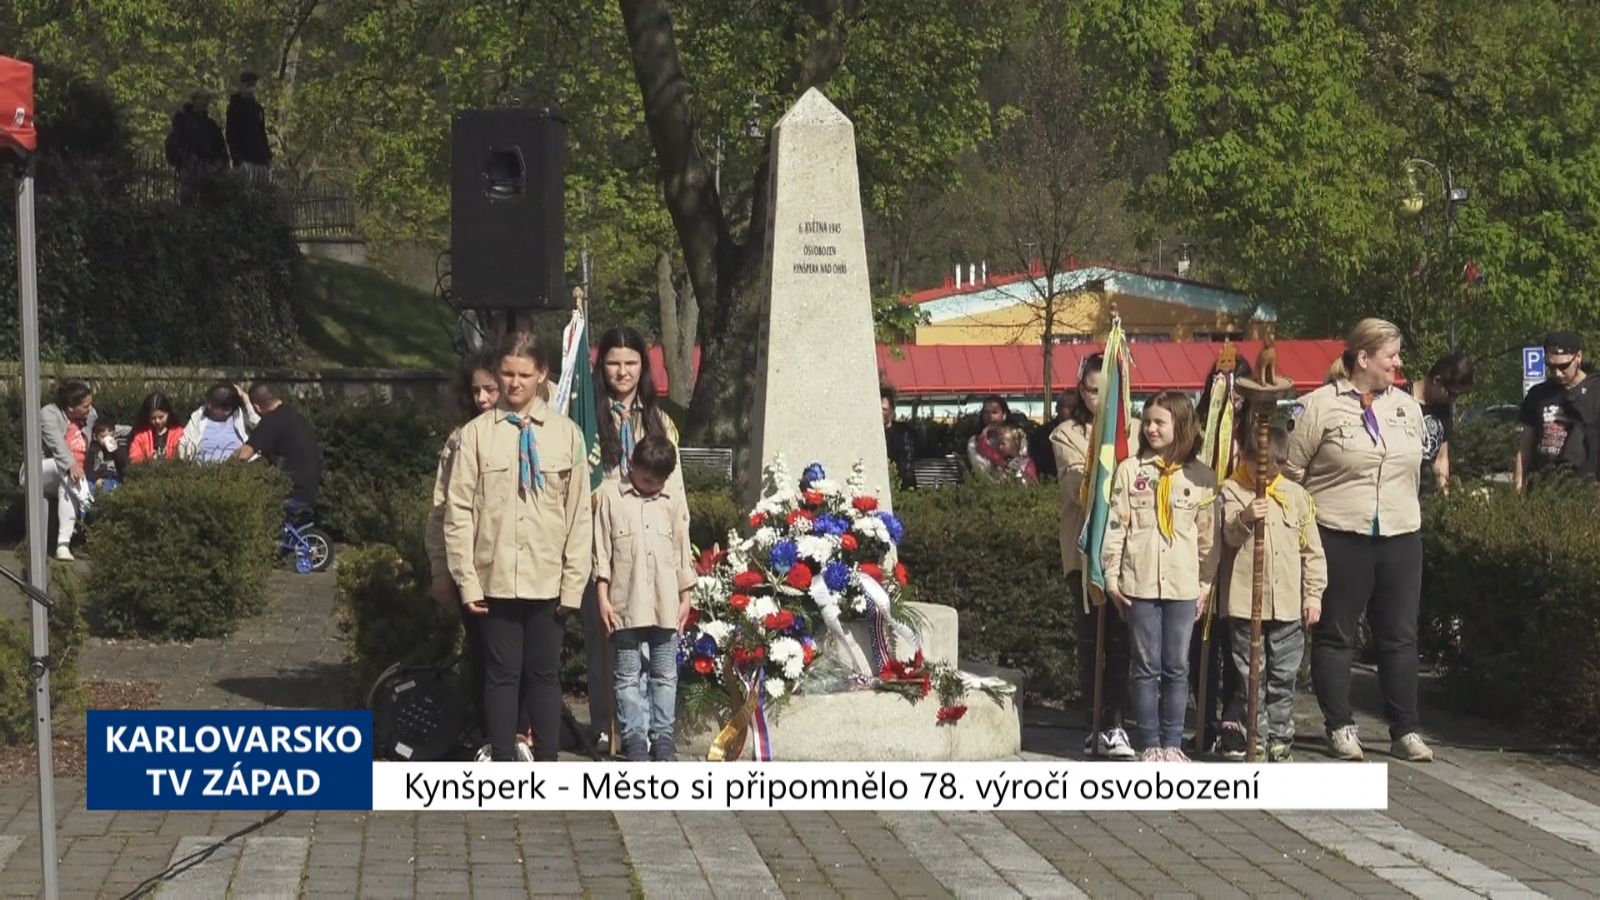 Kynšperk: Město si připomnělo 78. výročí osvobození (TV Západ)